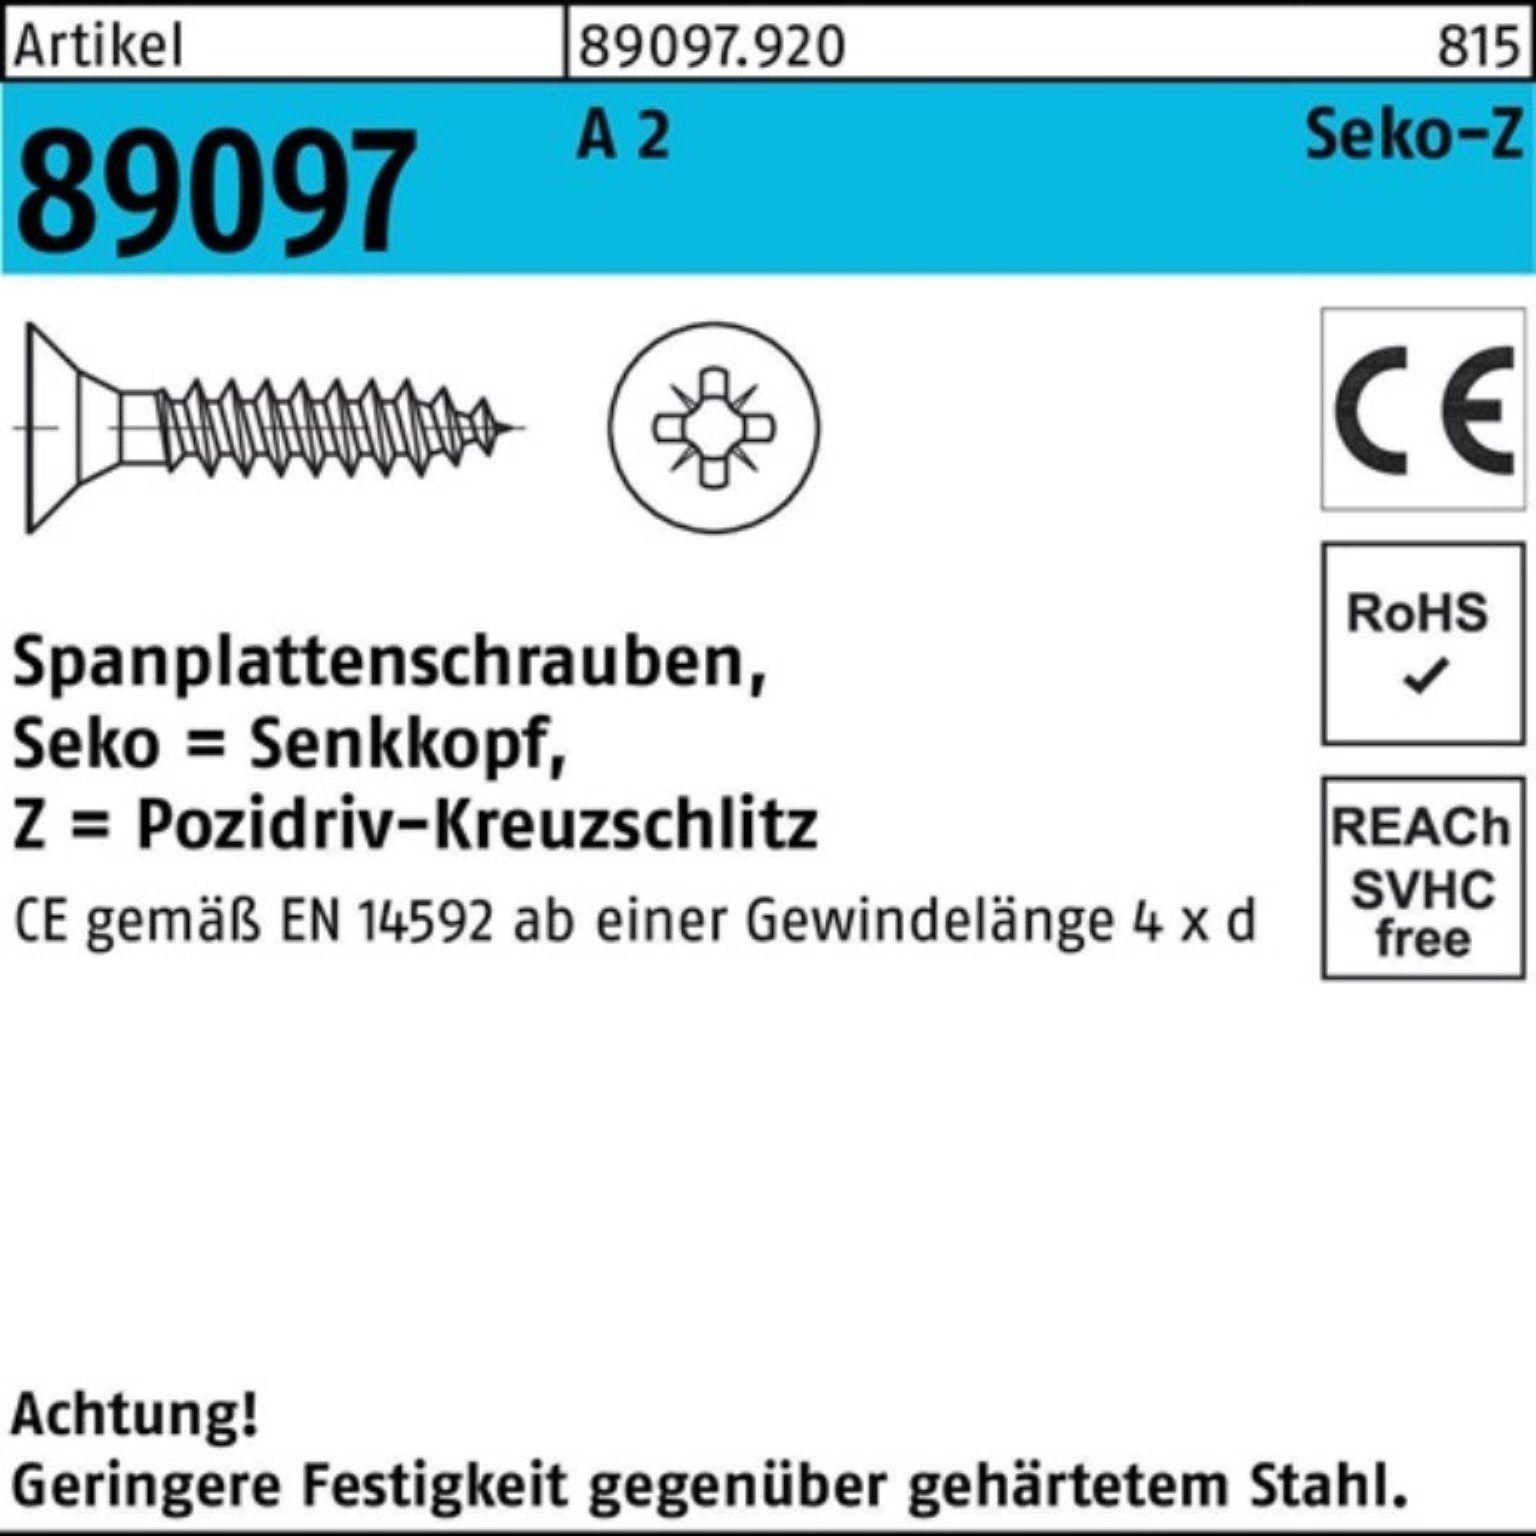 Reyher Spanplattenschraube 1000er PZ A Spanplattenschraube R 1000 SEKO 2 VG 30-Z 89097 4,5x Pack